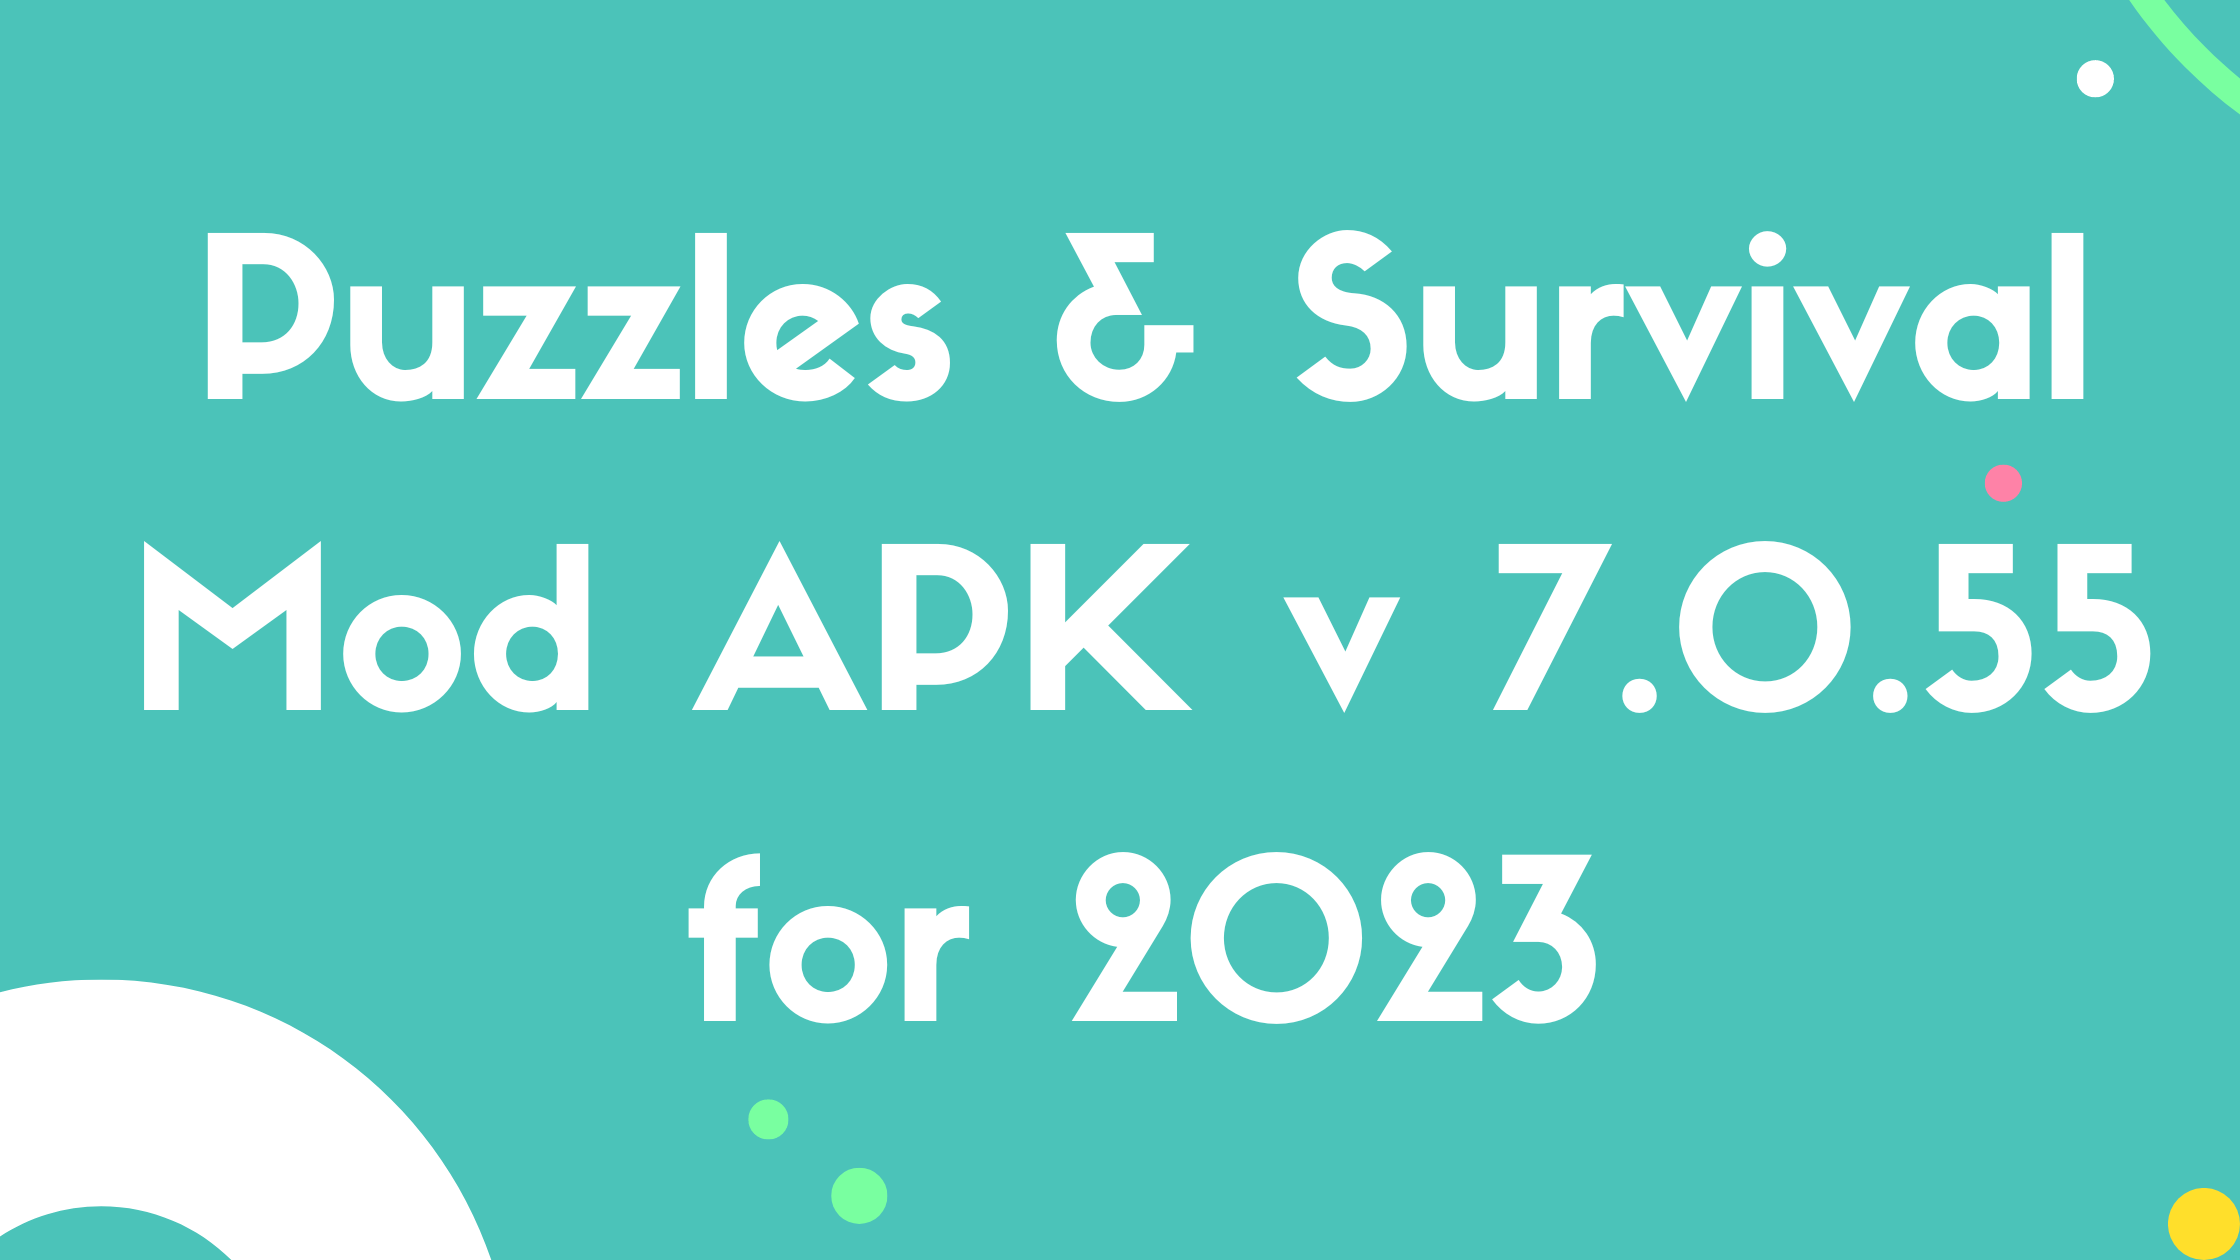 Puzzles & Survival Mod APK v 7.0.55 for 2023